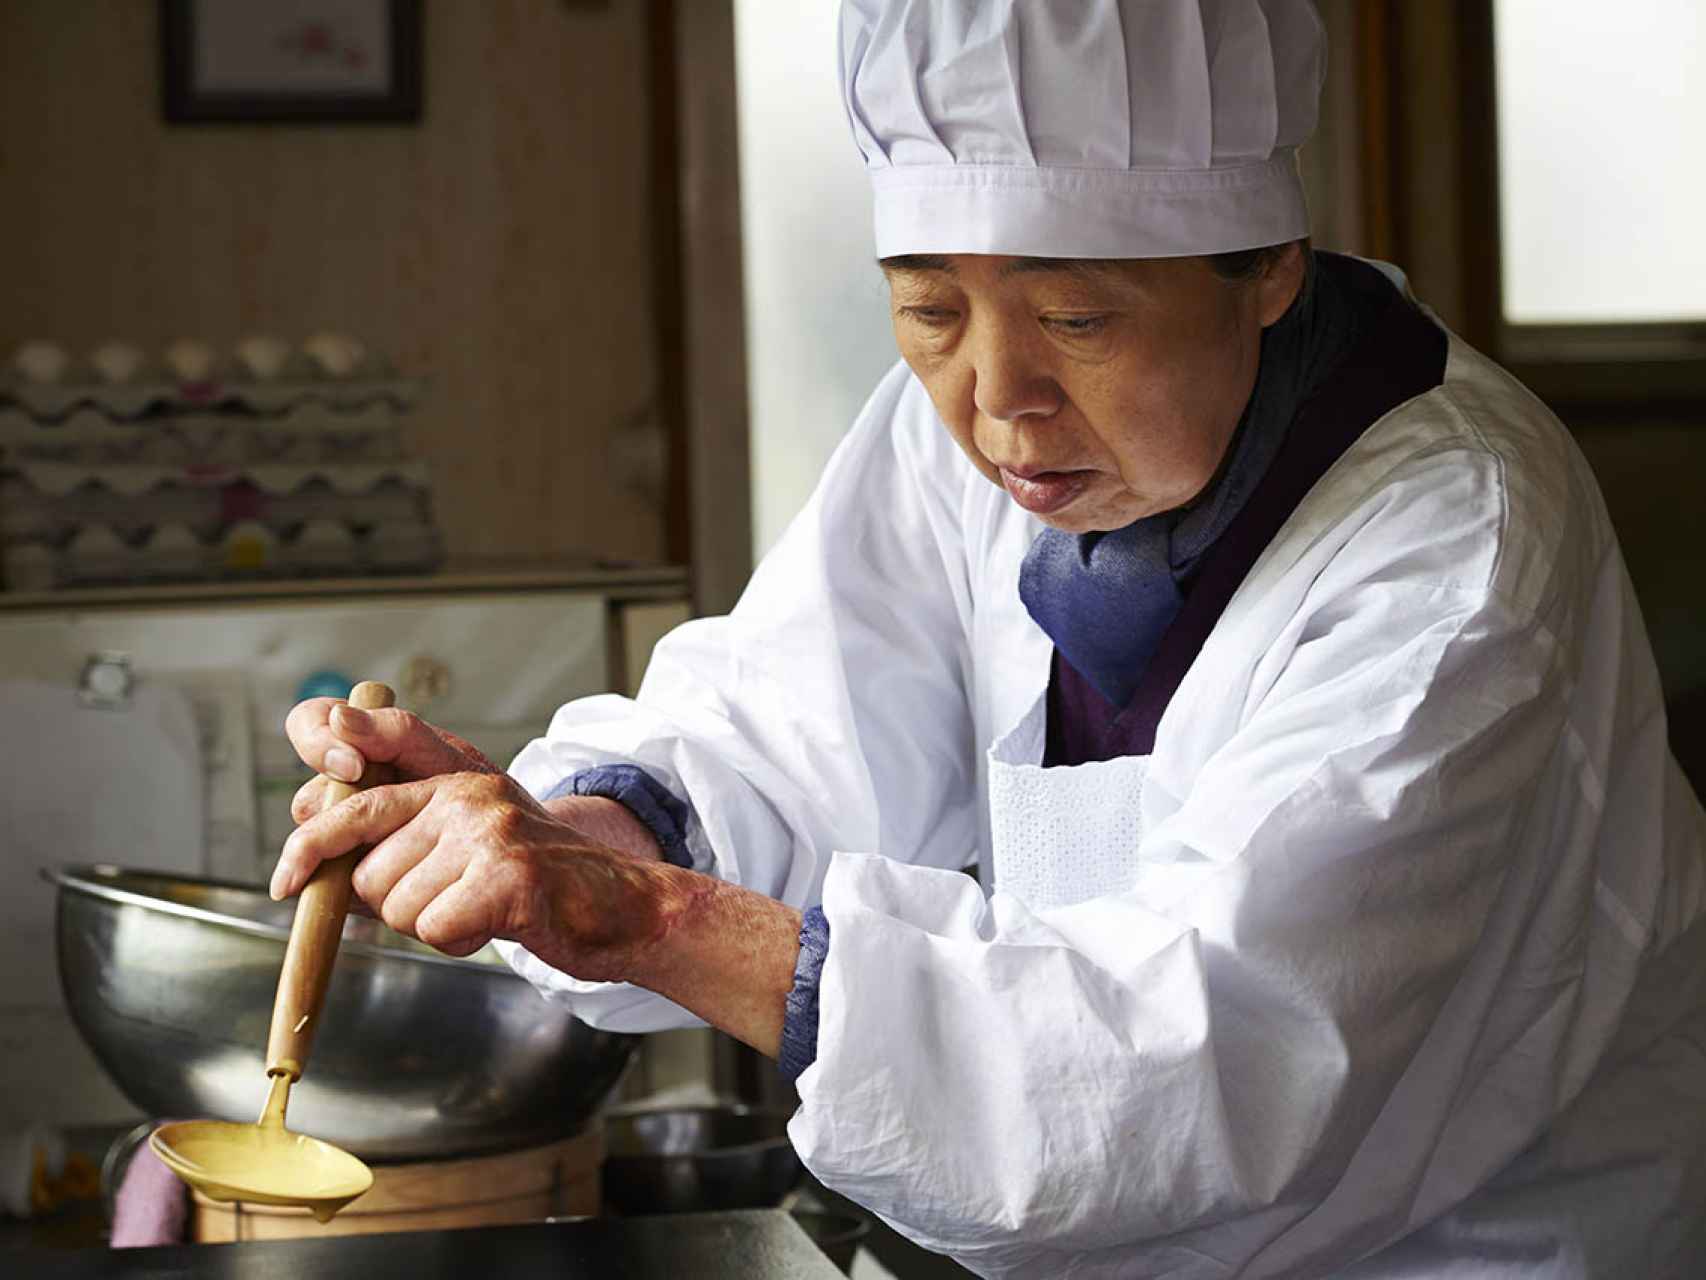 Tokue (interpretada por Kirin Kiki) preparando el dulce.